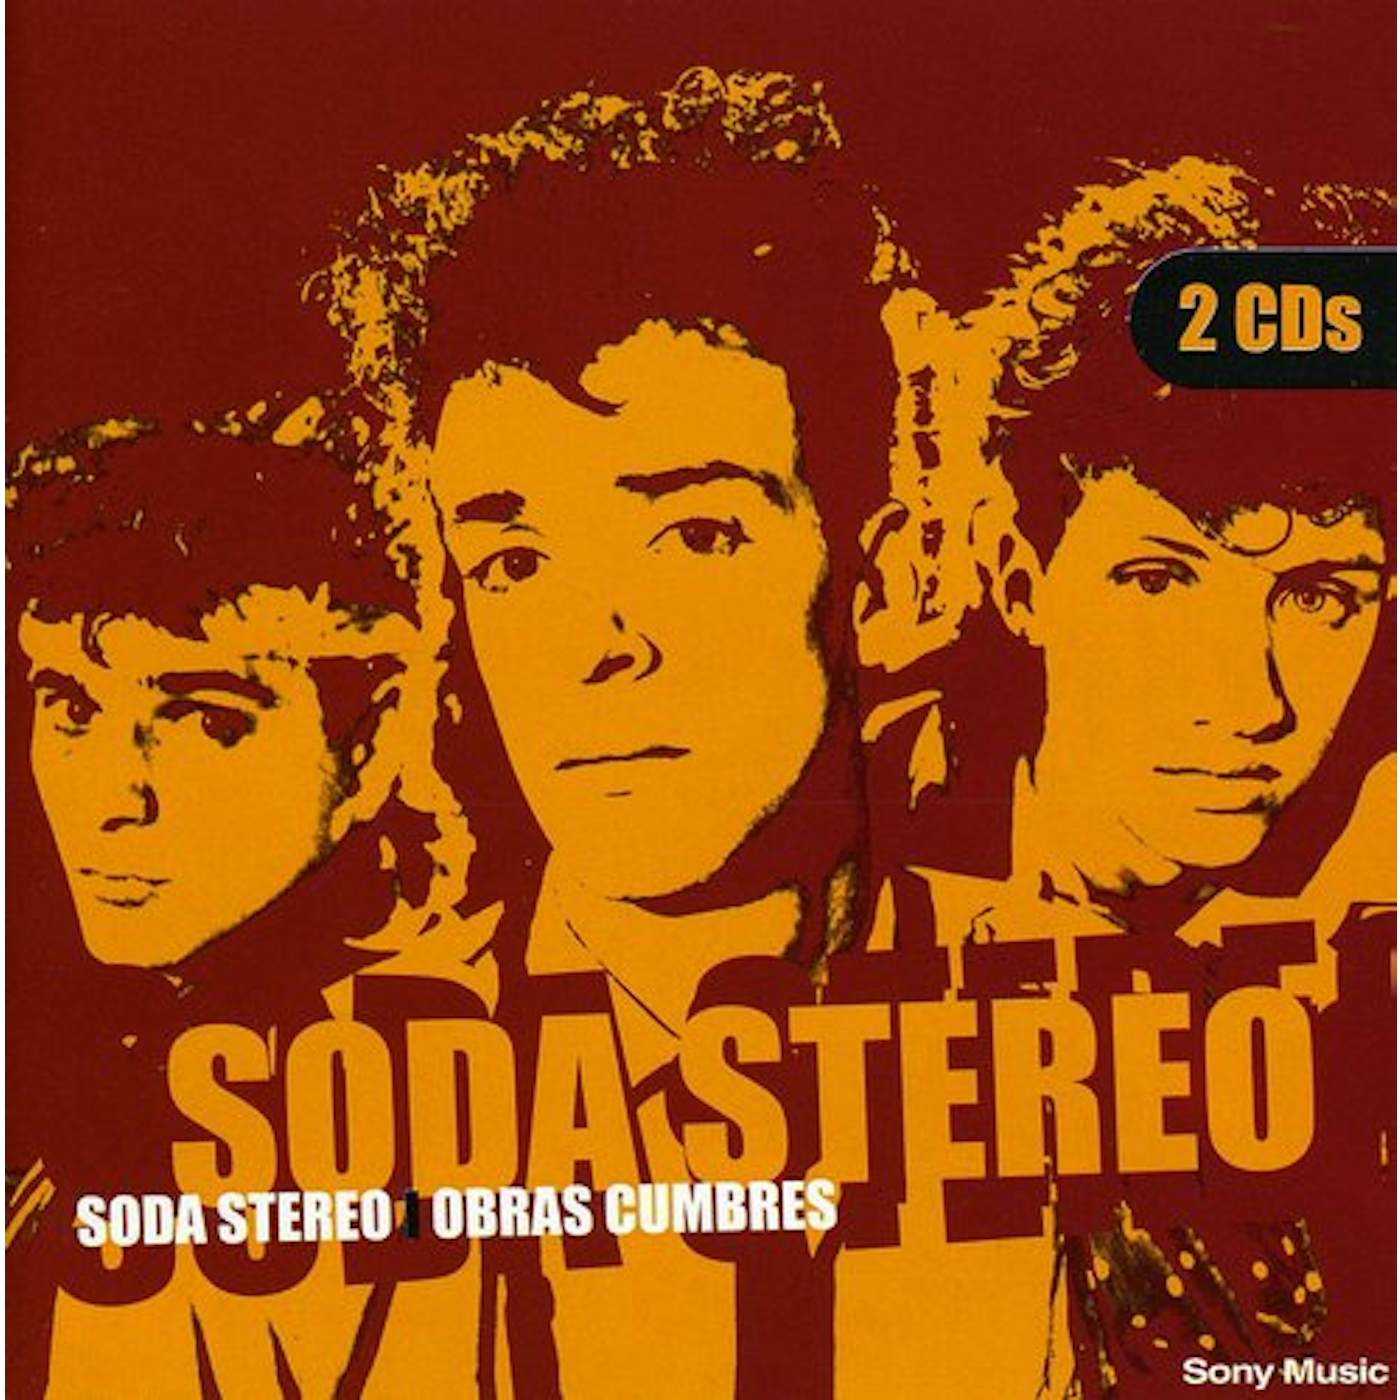 Soda Stereo OBRAS CUMBRES CD